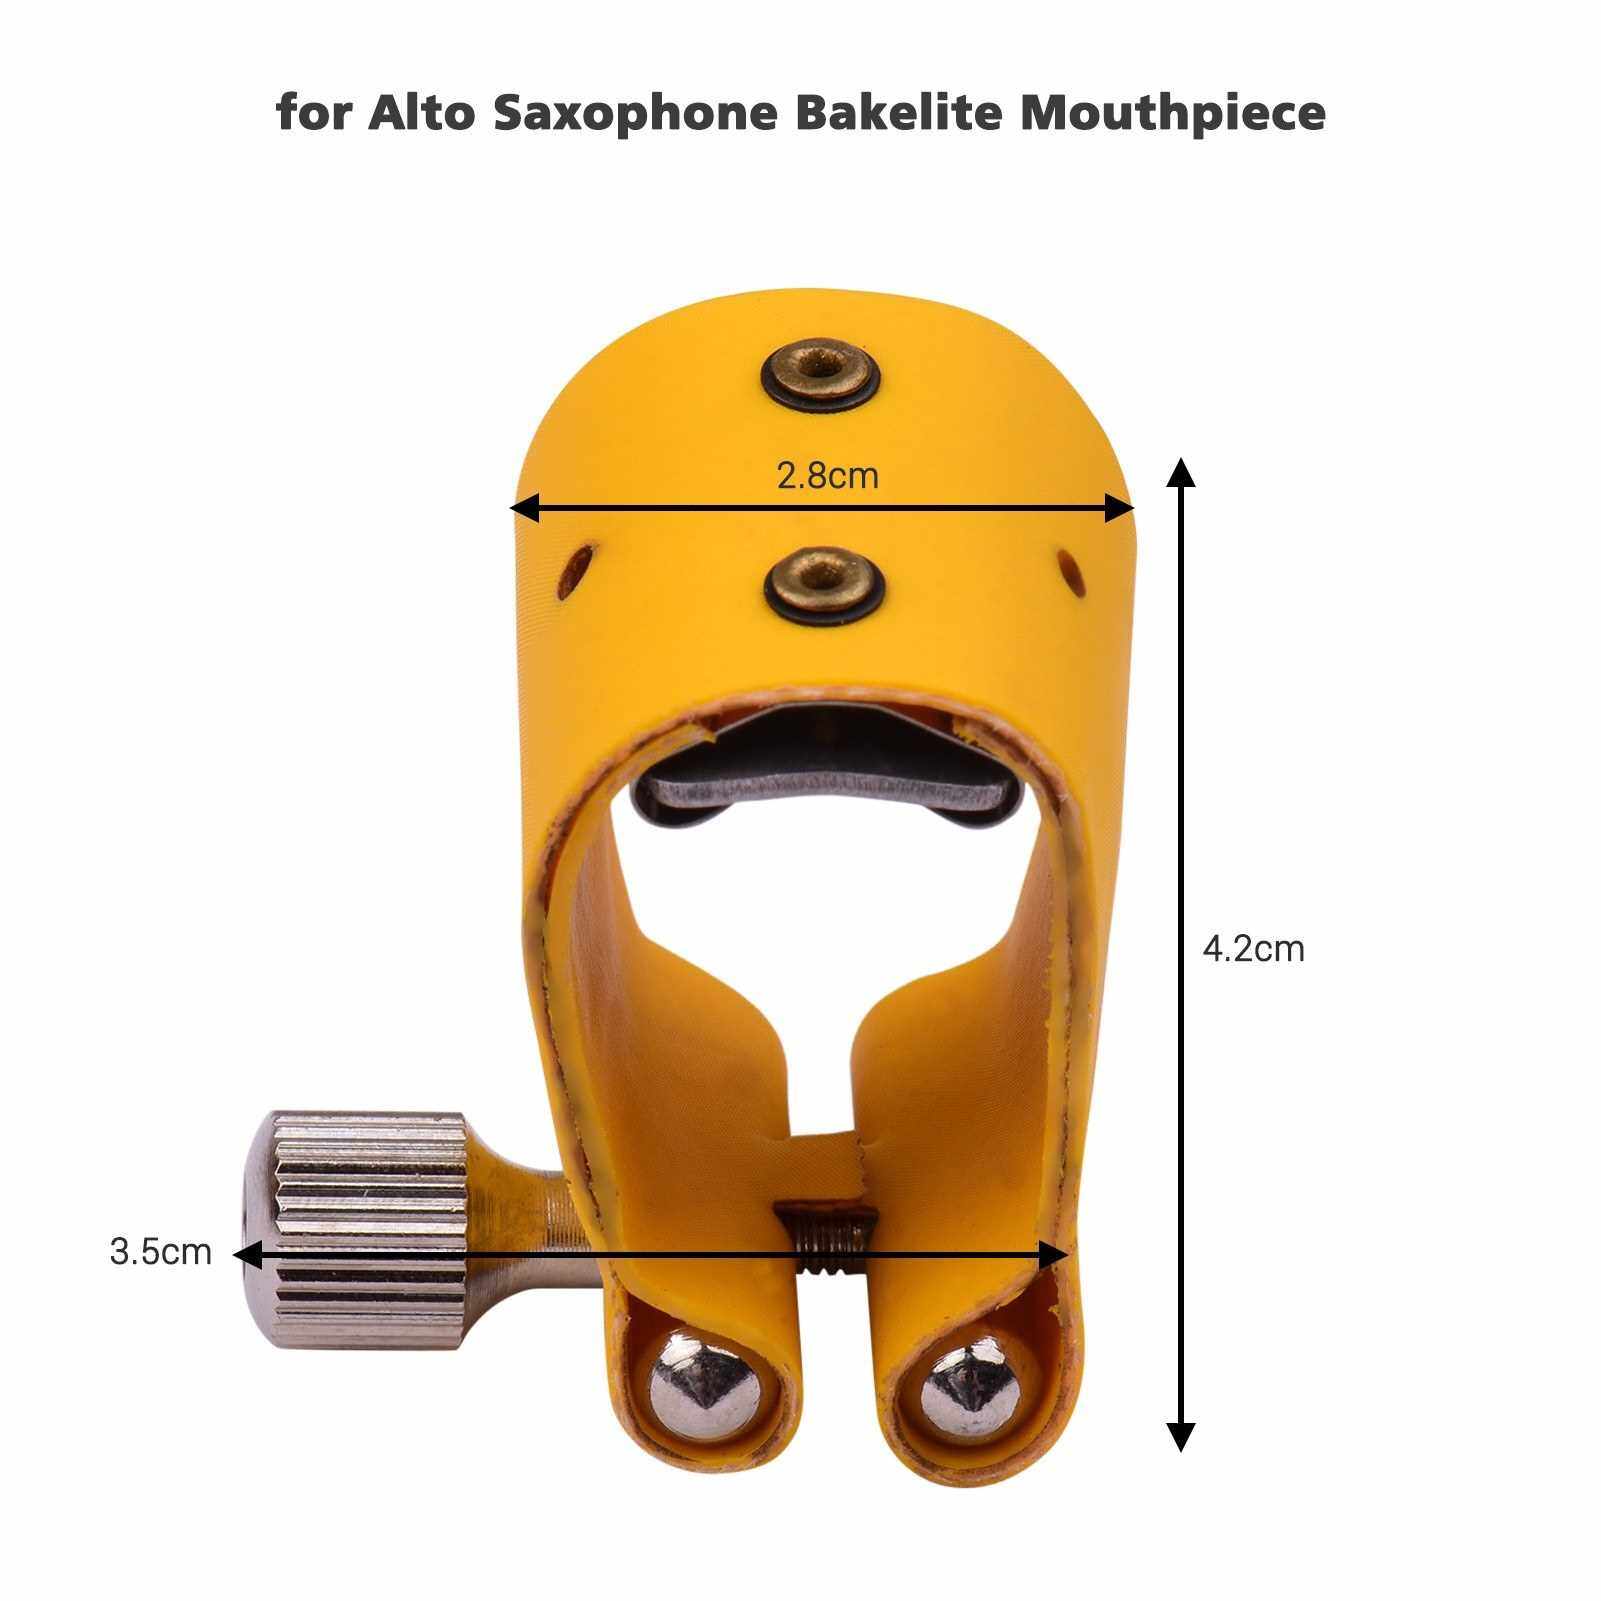 Saxophone Ligature Compact Durable Sax Ligature for Alto Saxophone Bakelite Mouthpiece (Standard)